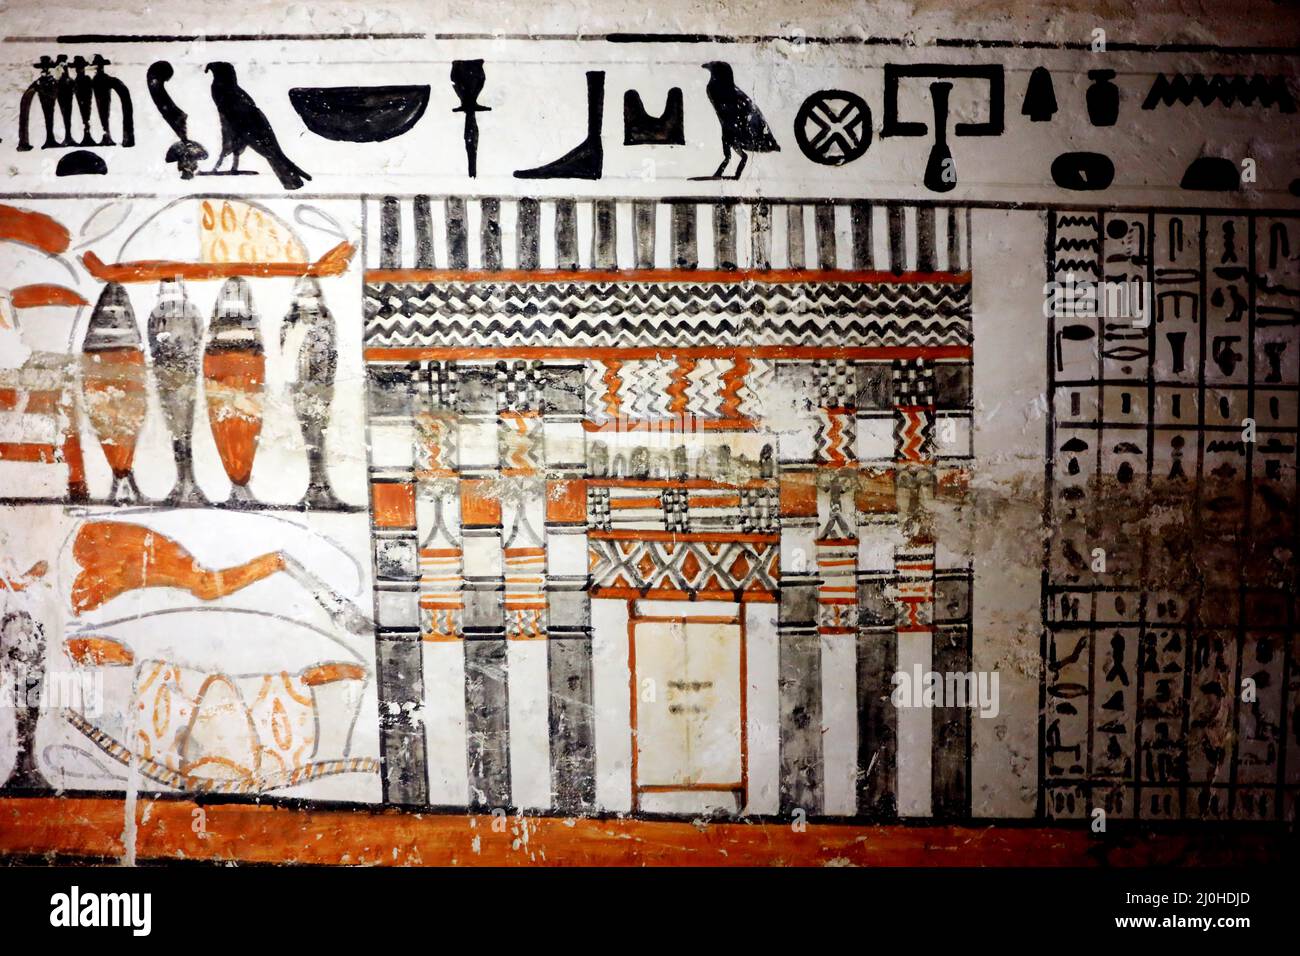 (220319) -- LE CAIRE, 19 mars 2022 (Xinhua) -- la photo montre la peinture murale dans une ancienne tombe découverte aux sites archéologiques de Saqqara au sud-ouest du Caire, en Égypte, le 19 mars 2022. Le ministère égyptien du Tourisme et des Antiquités a annoncé jeudi la découverte de cinq tombes anciennes de 4 000 ans dans les sites archéologiques de Saqqara, au sud-ouest du Caire. Les tombes contiennent des découvertes et des objets datant de la fin de l'ancien Royaume s'étendant de 2686 BC à 2181 BC et le début de la première période intermédiaire s'étendant de 2181 BC à 2055 BC. ALLER AVEC 'l'Egypte découvre cinq 4,00 Banque D'Images